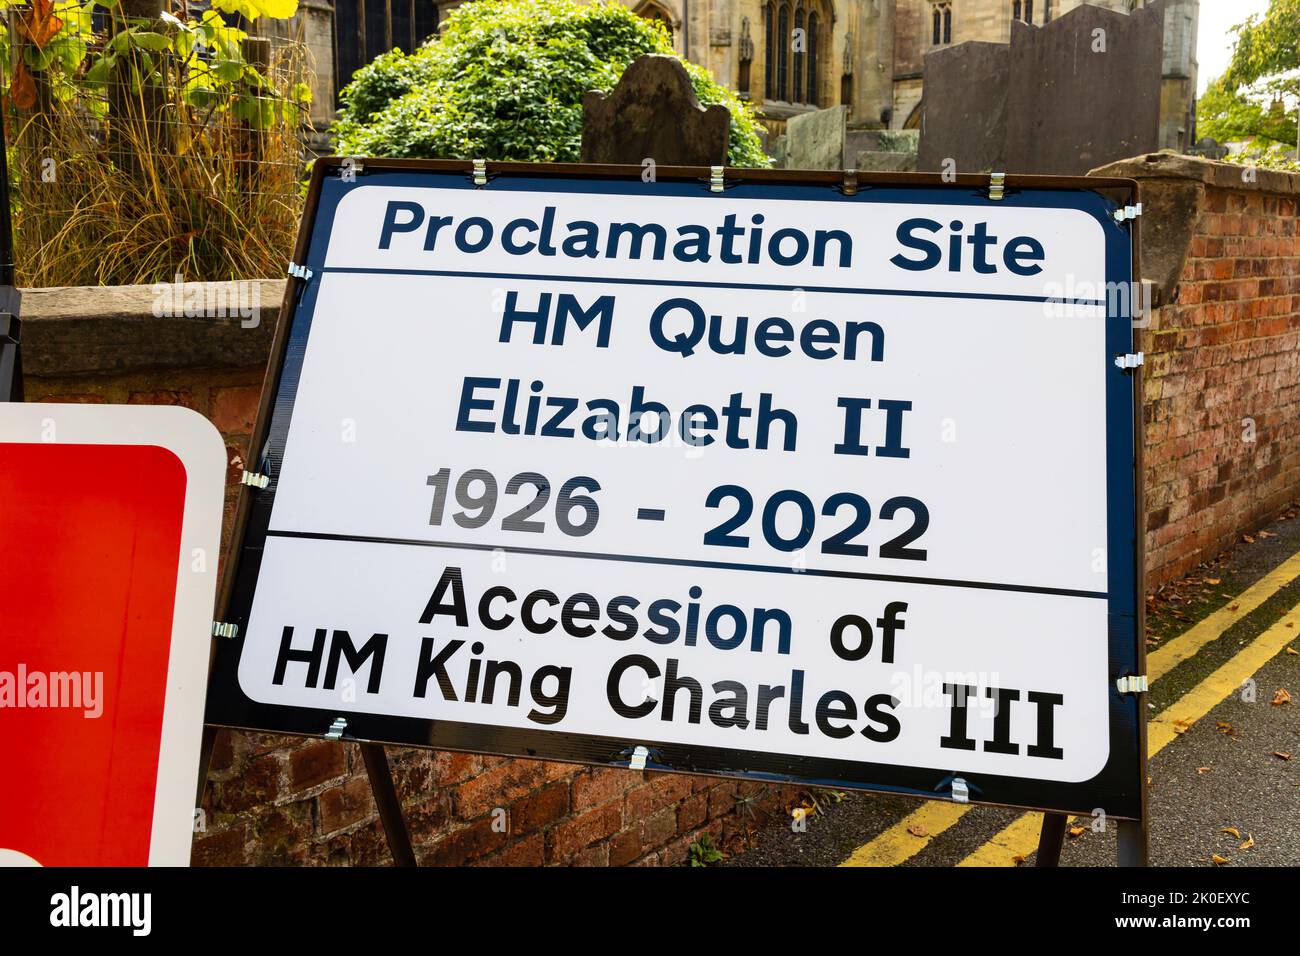 Route fermée signe et Proclamation avis sur le décès de la Reine Elizabeth II et l'accession de la Reine Charles III Grantham, Lincolnshire, Angleterre. Banque D'Images